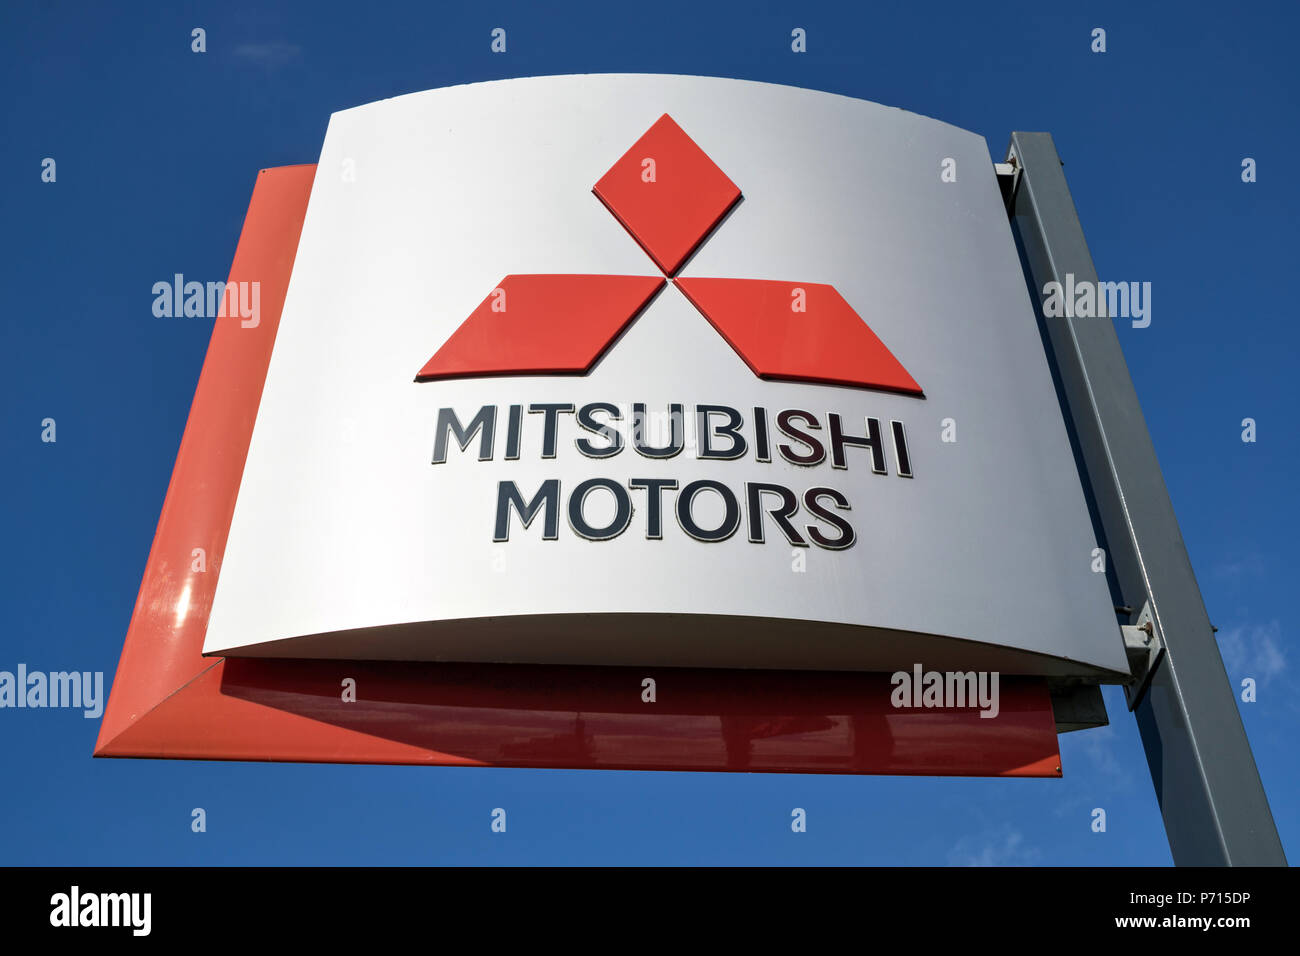 Concessionnaire Mitsubishi sign against blue sky. Mitsubishi Motors est un constructeur automobile multinationale japonaise basée à Minato, Tokyo. Banque D'Images